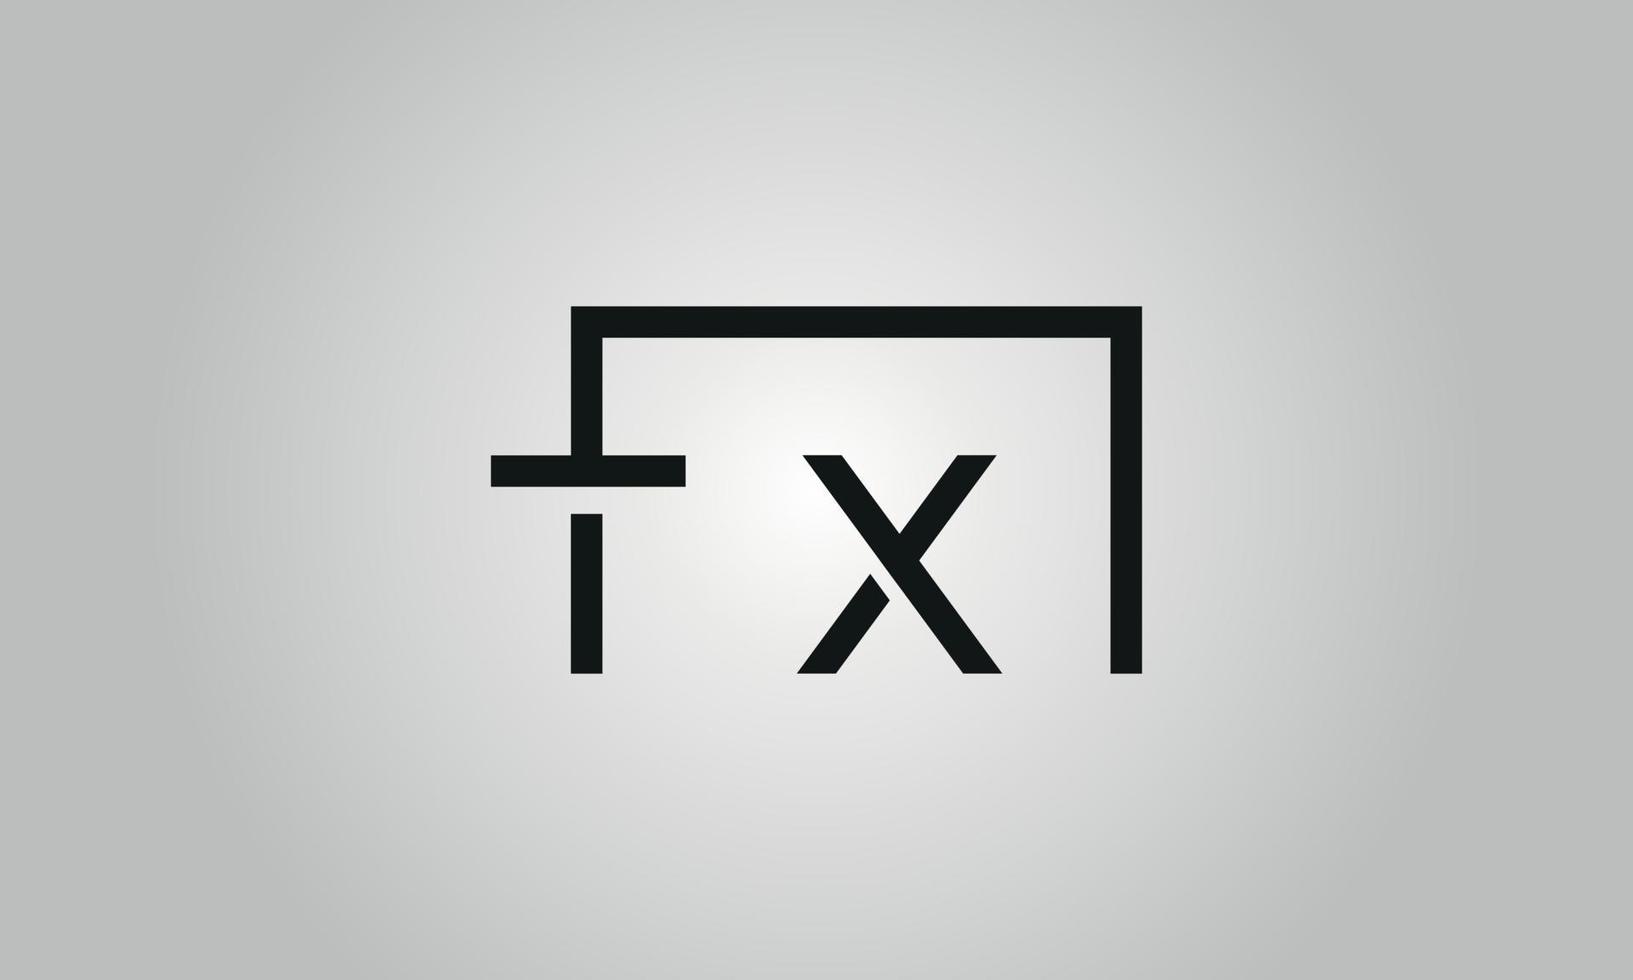 création de logo lettre tx. logo tx avec forme carrée dans le modèle vectoriel gratuit de couleurs noires.